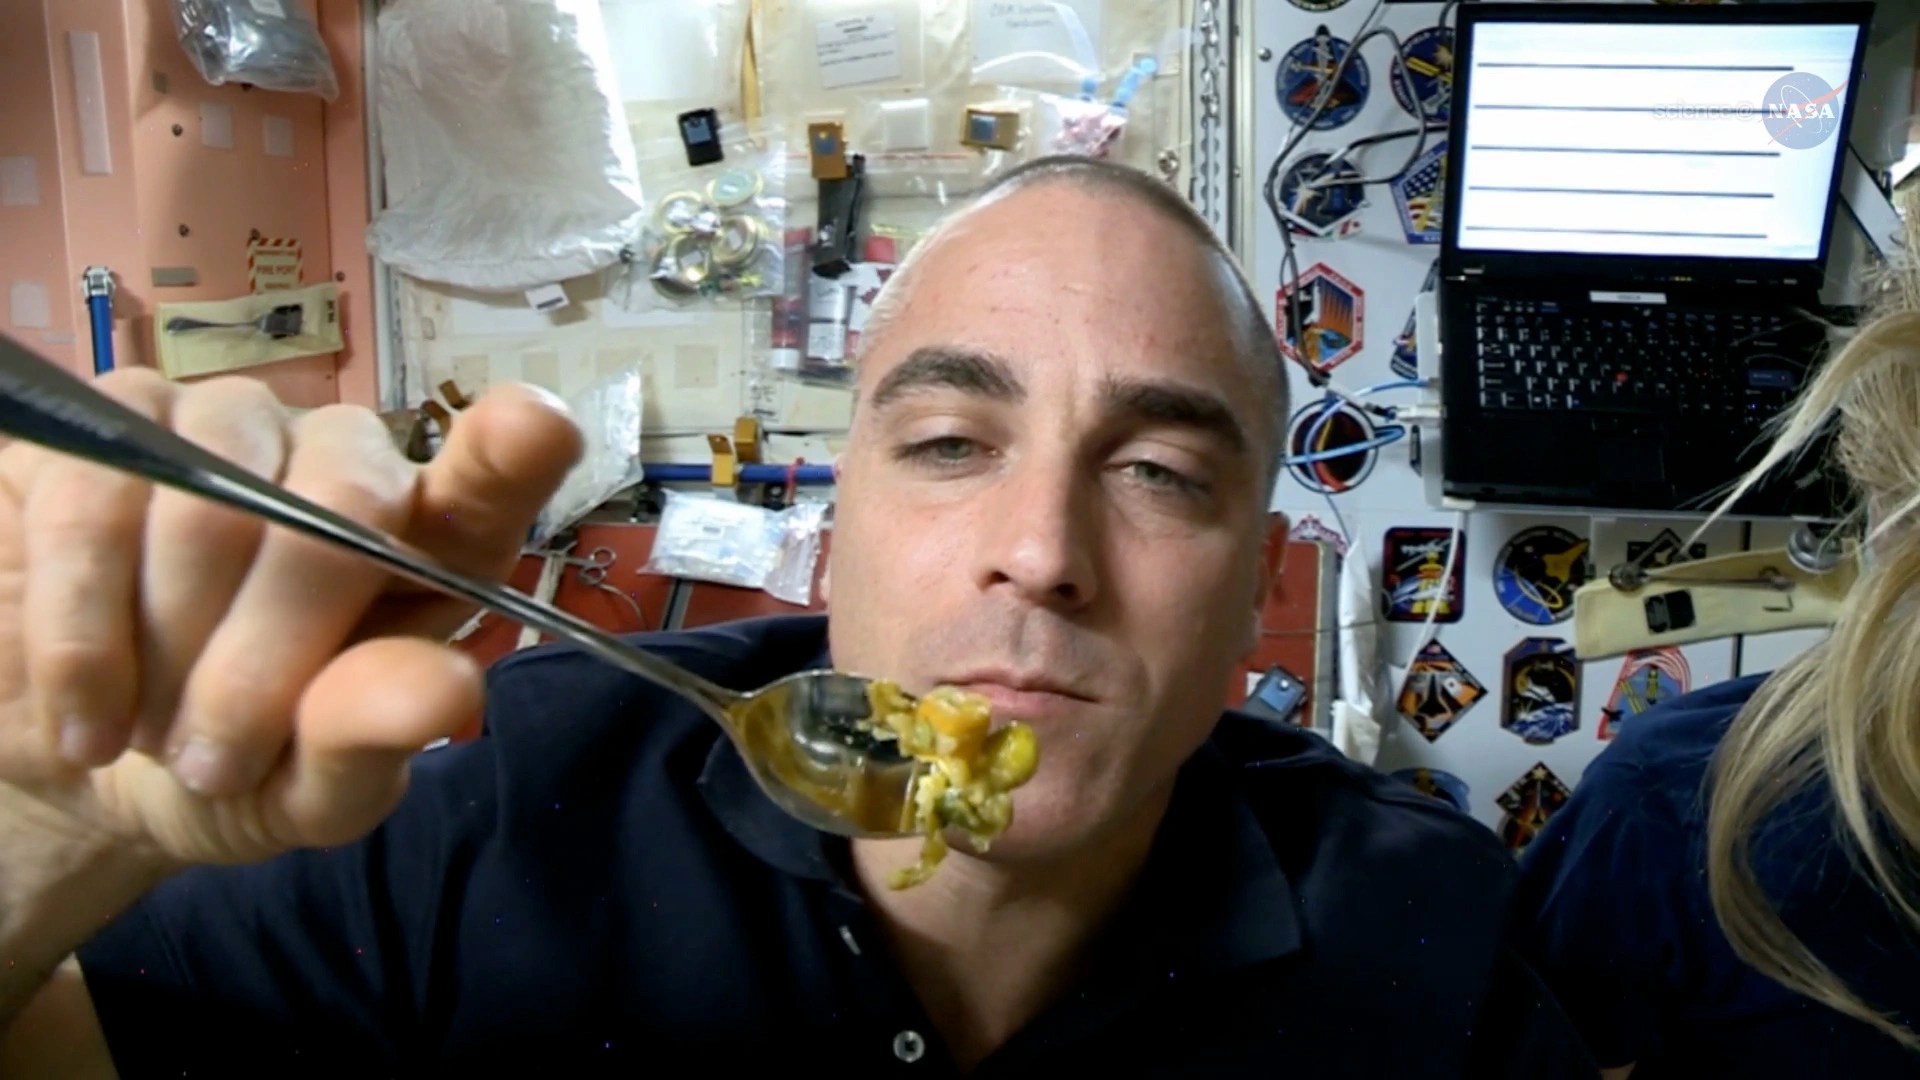 Una astronauta en la estación espacial sostiene un cubierto con comida frente a él.